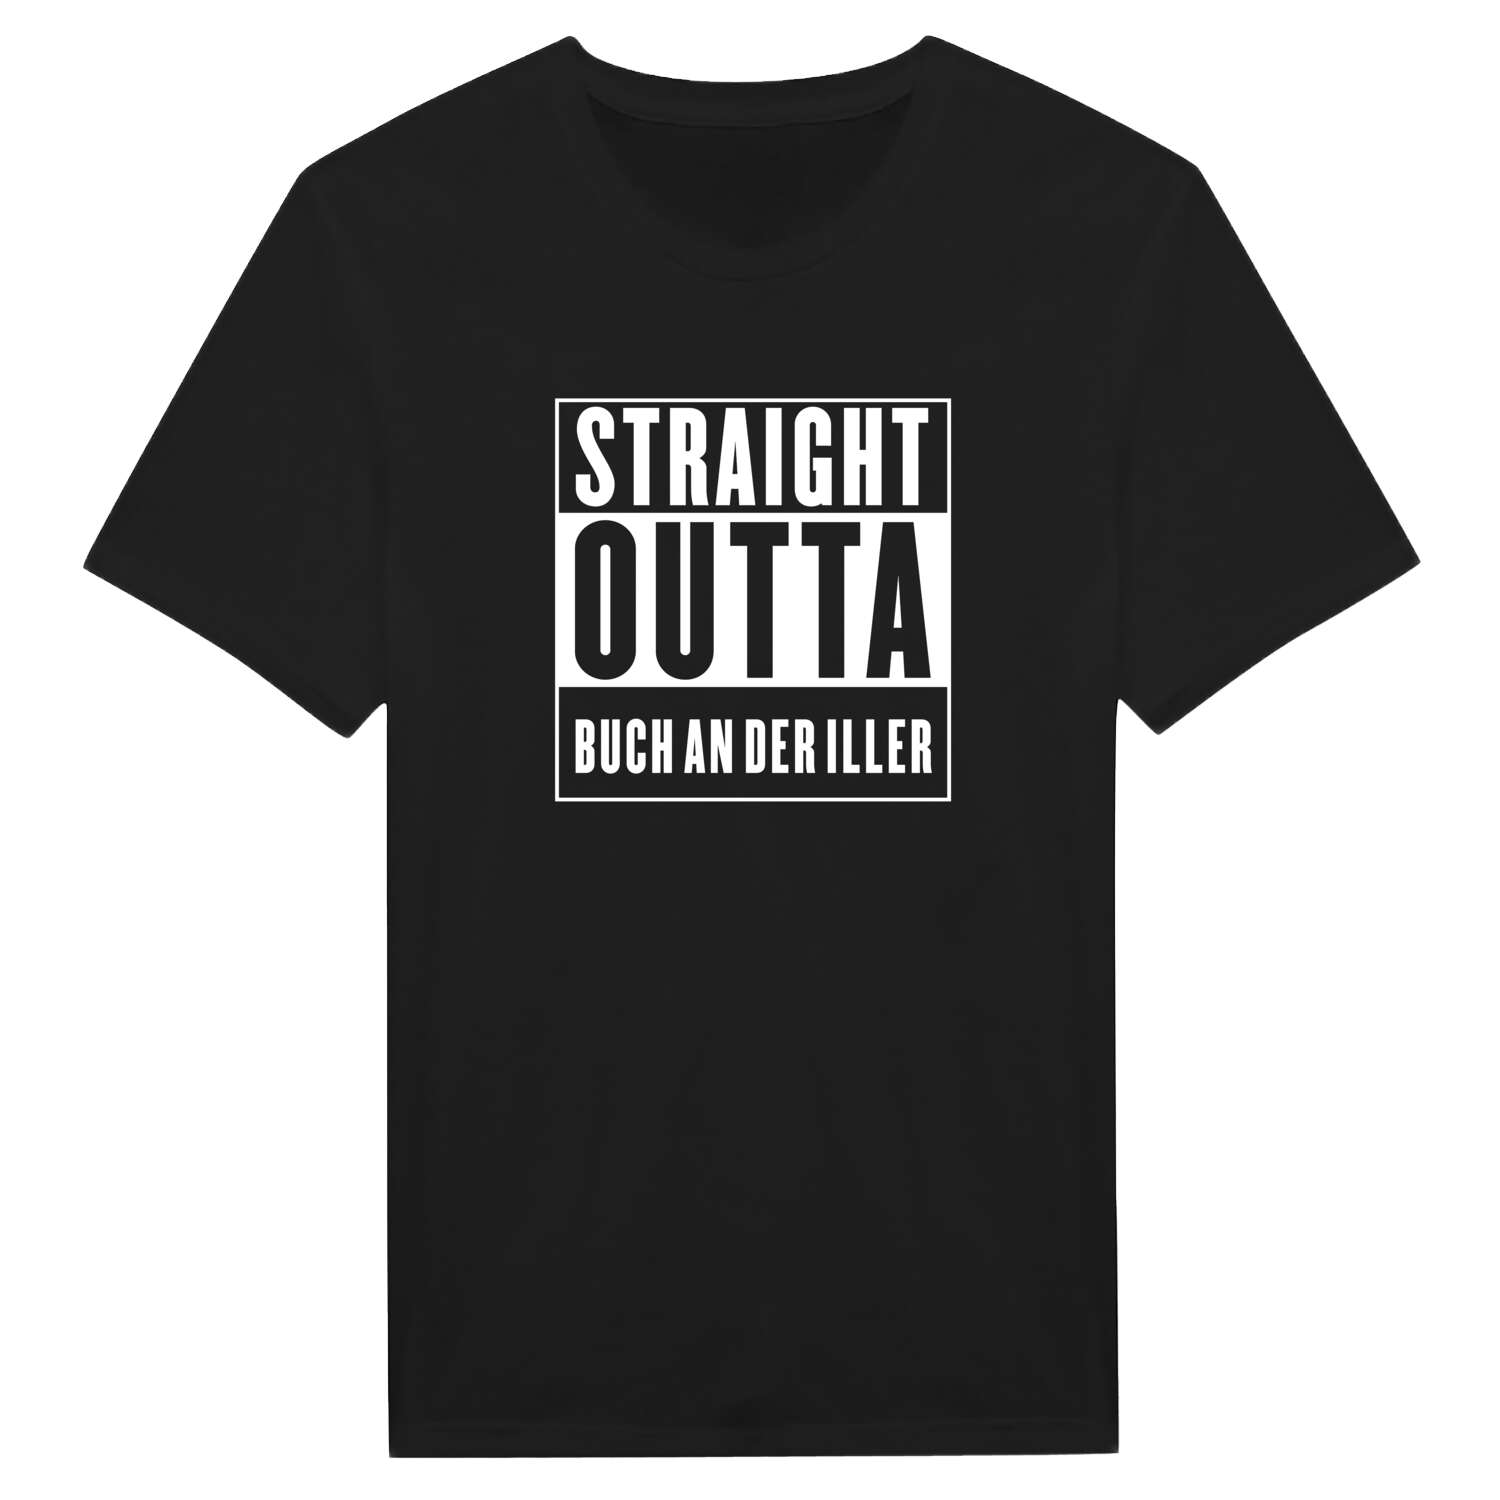 Buch an der Iller T-Shirt »Straight Outta«